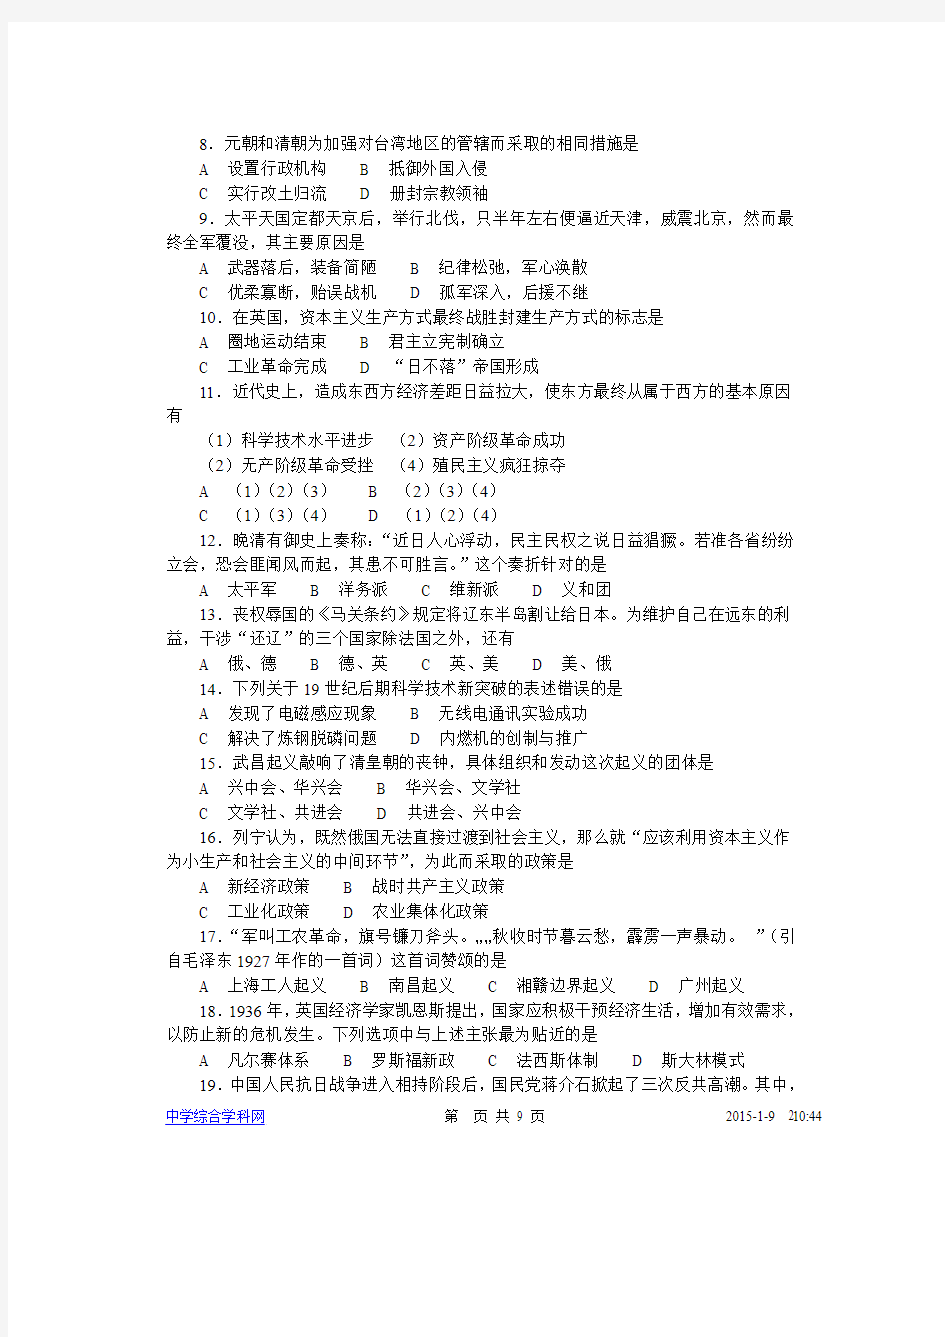 2002年全国高考(上海卷)历史试题及其参考答